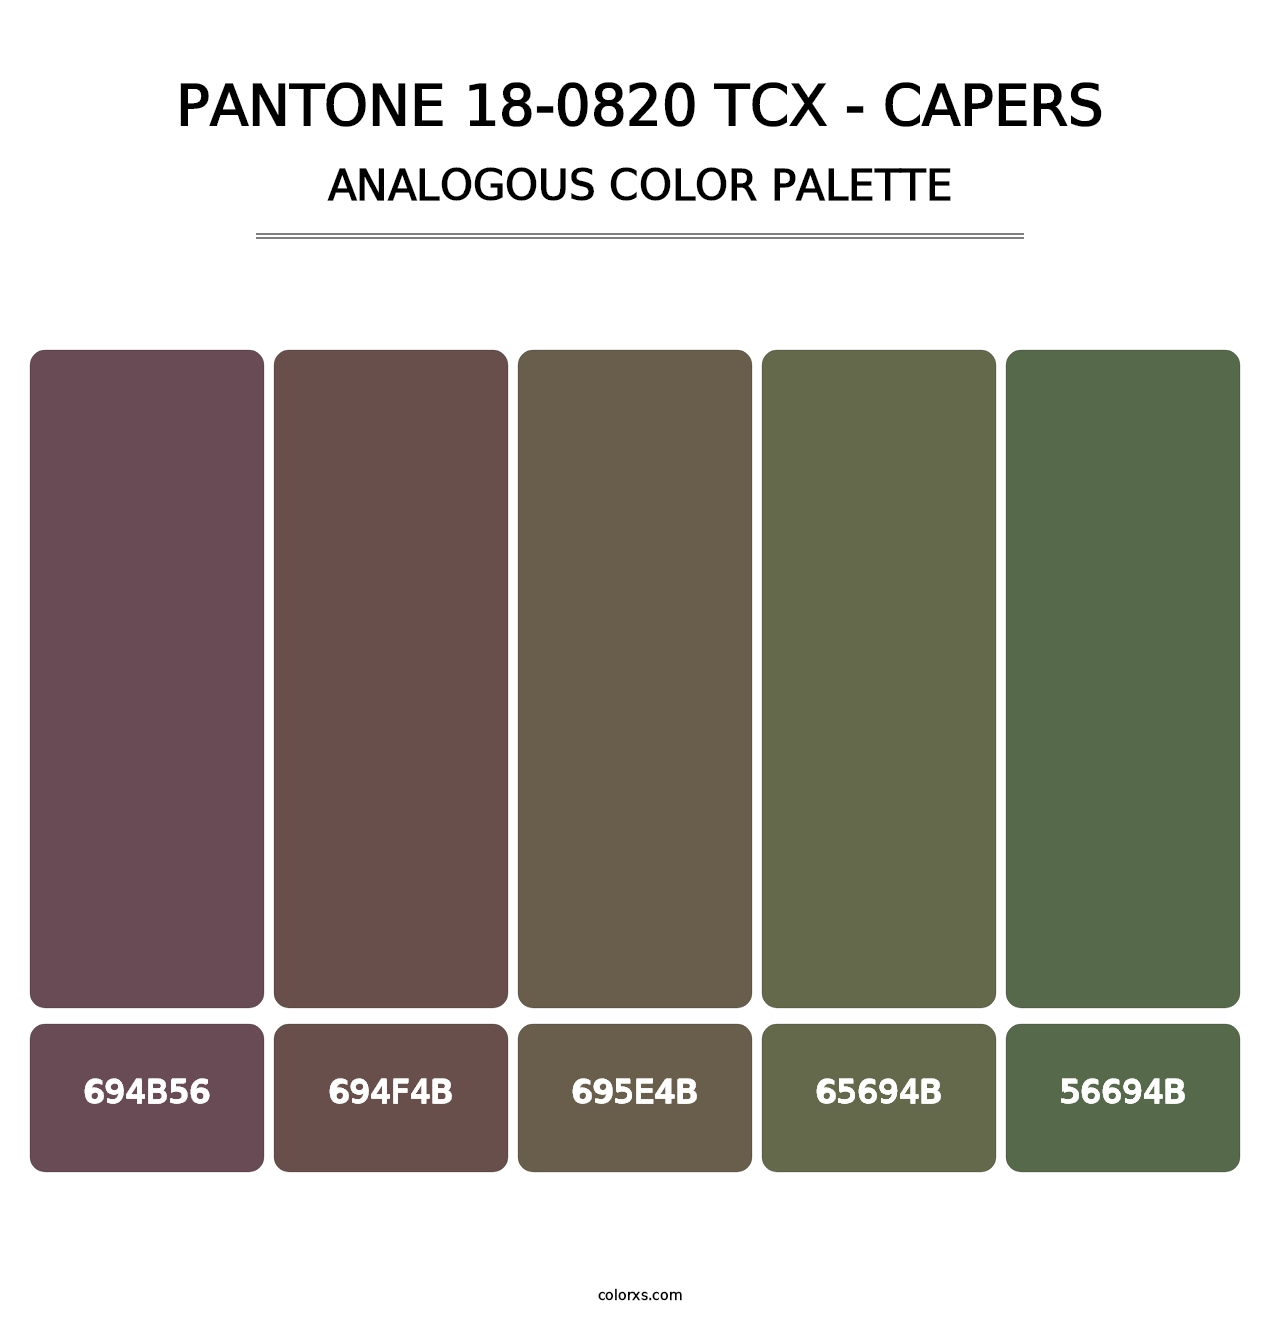 PANTONE 18-0820 TCX - Capers - Analogous Color Palette